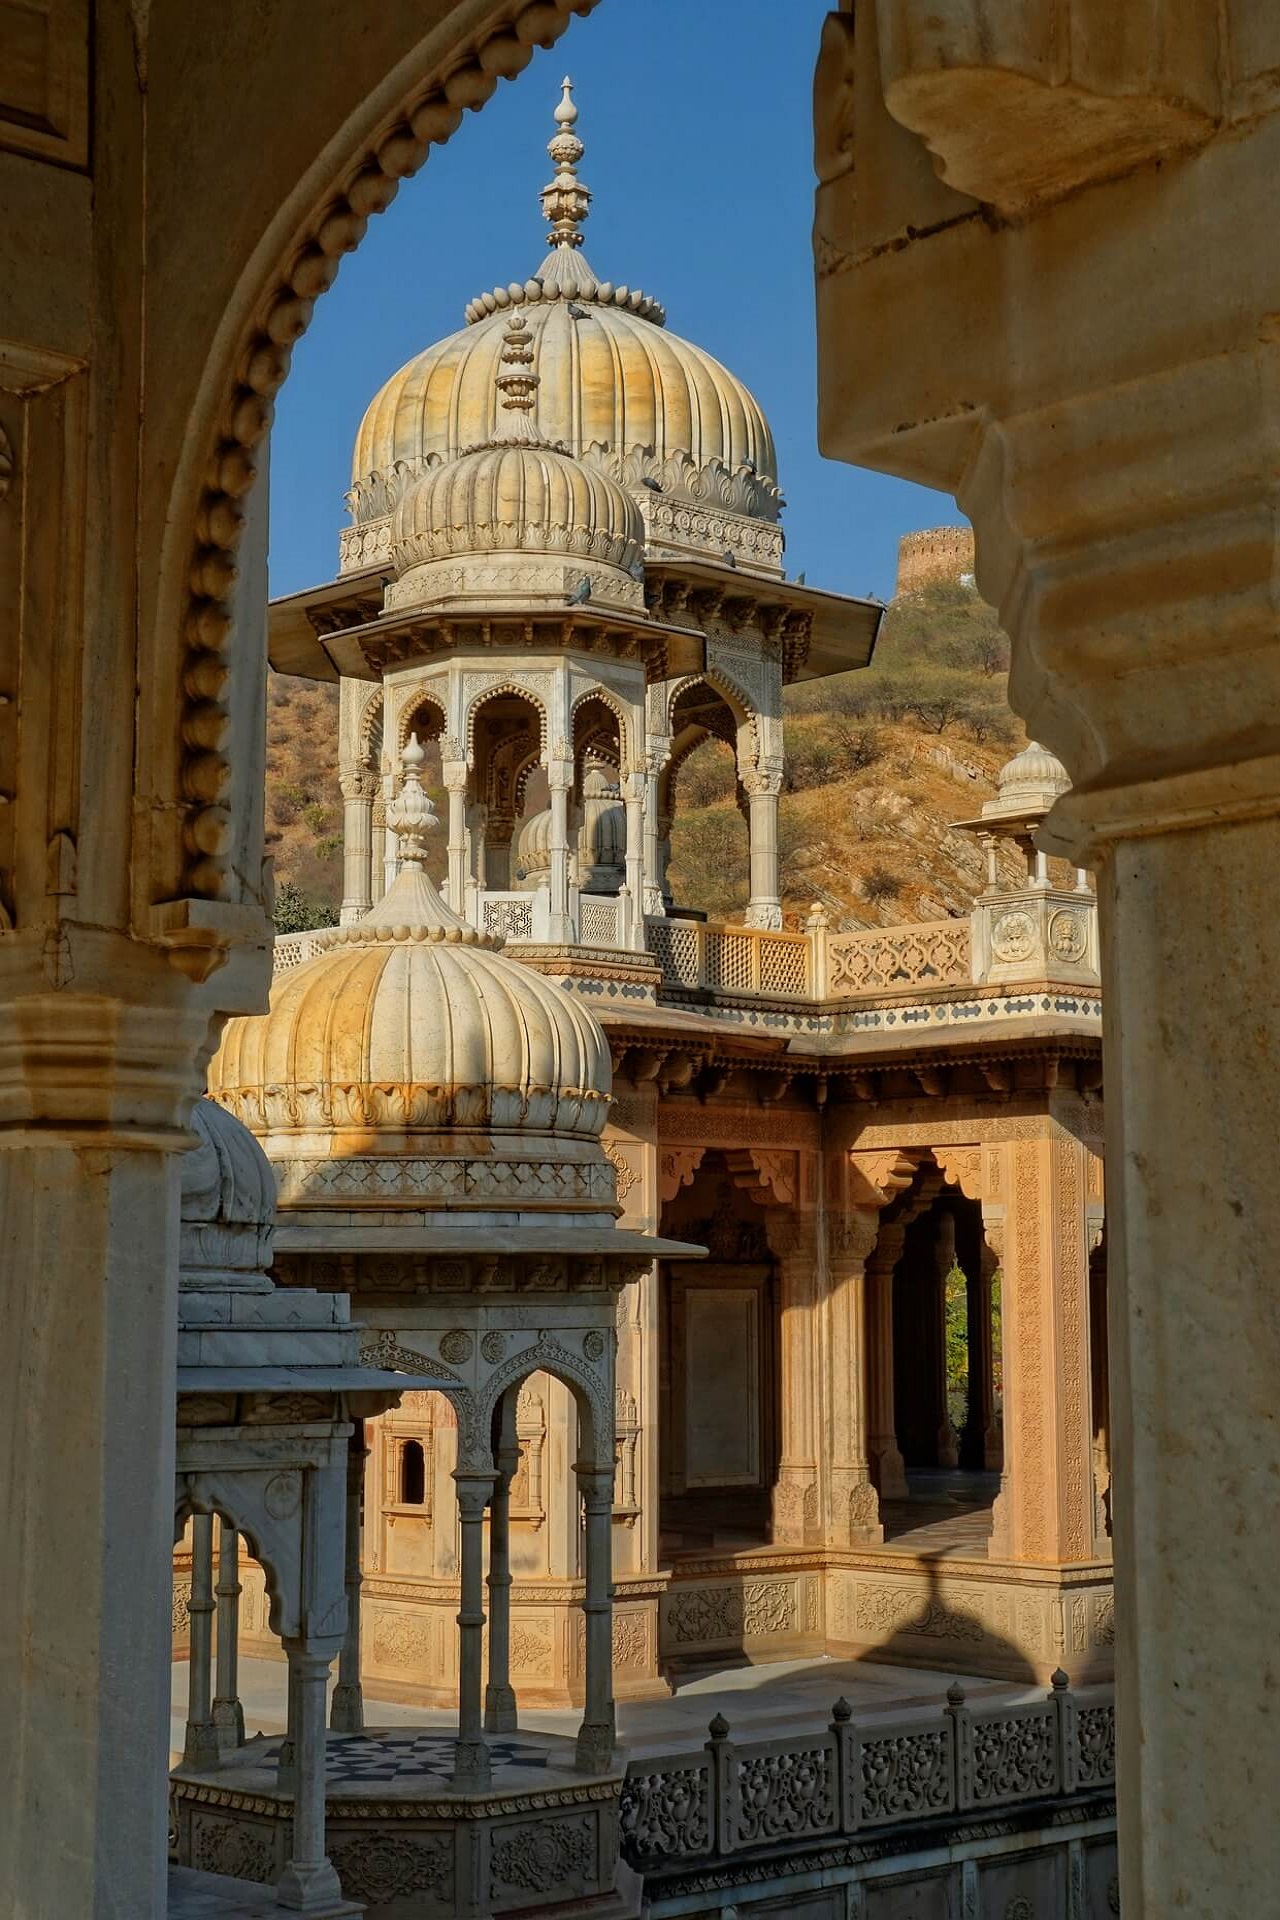 gaitore-ki-chhatriyan-india-jaipur (2)